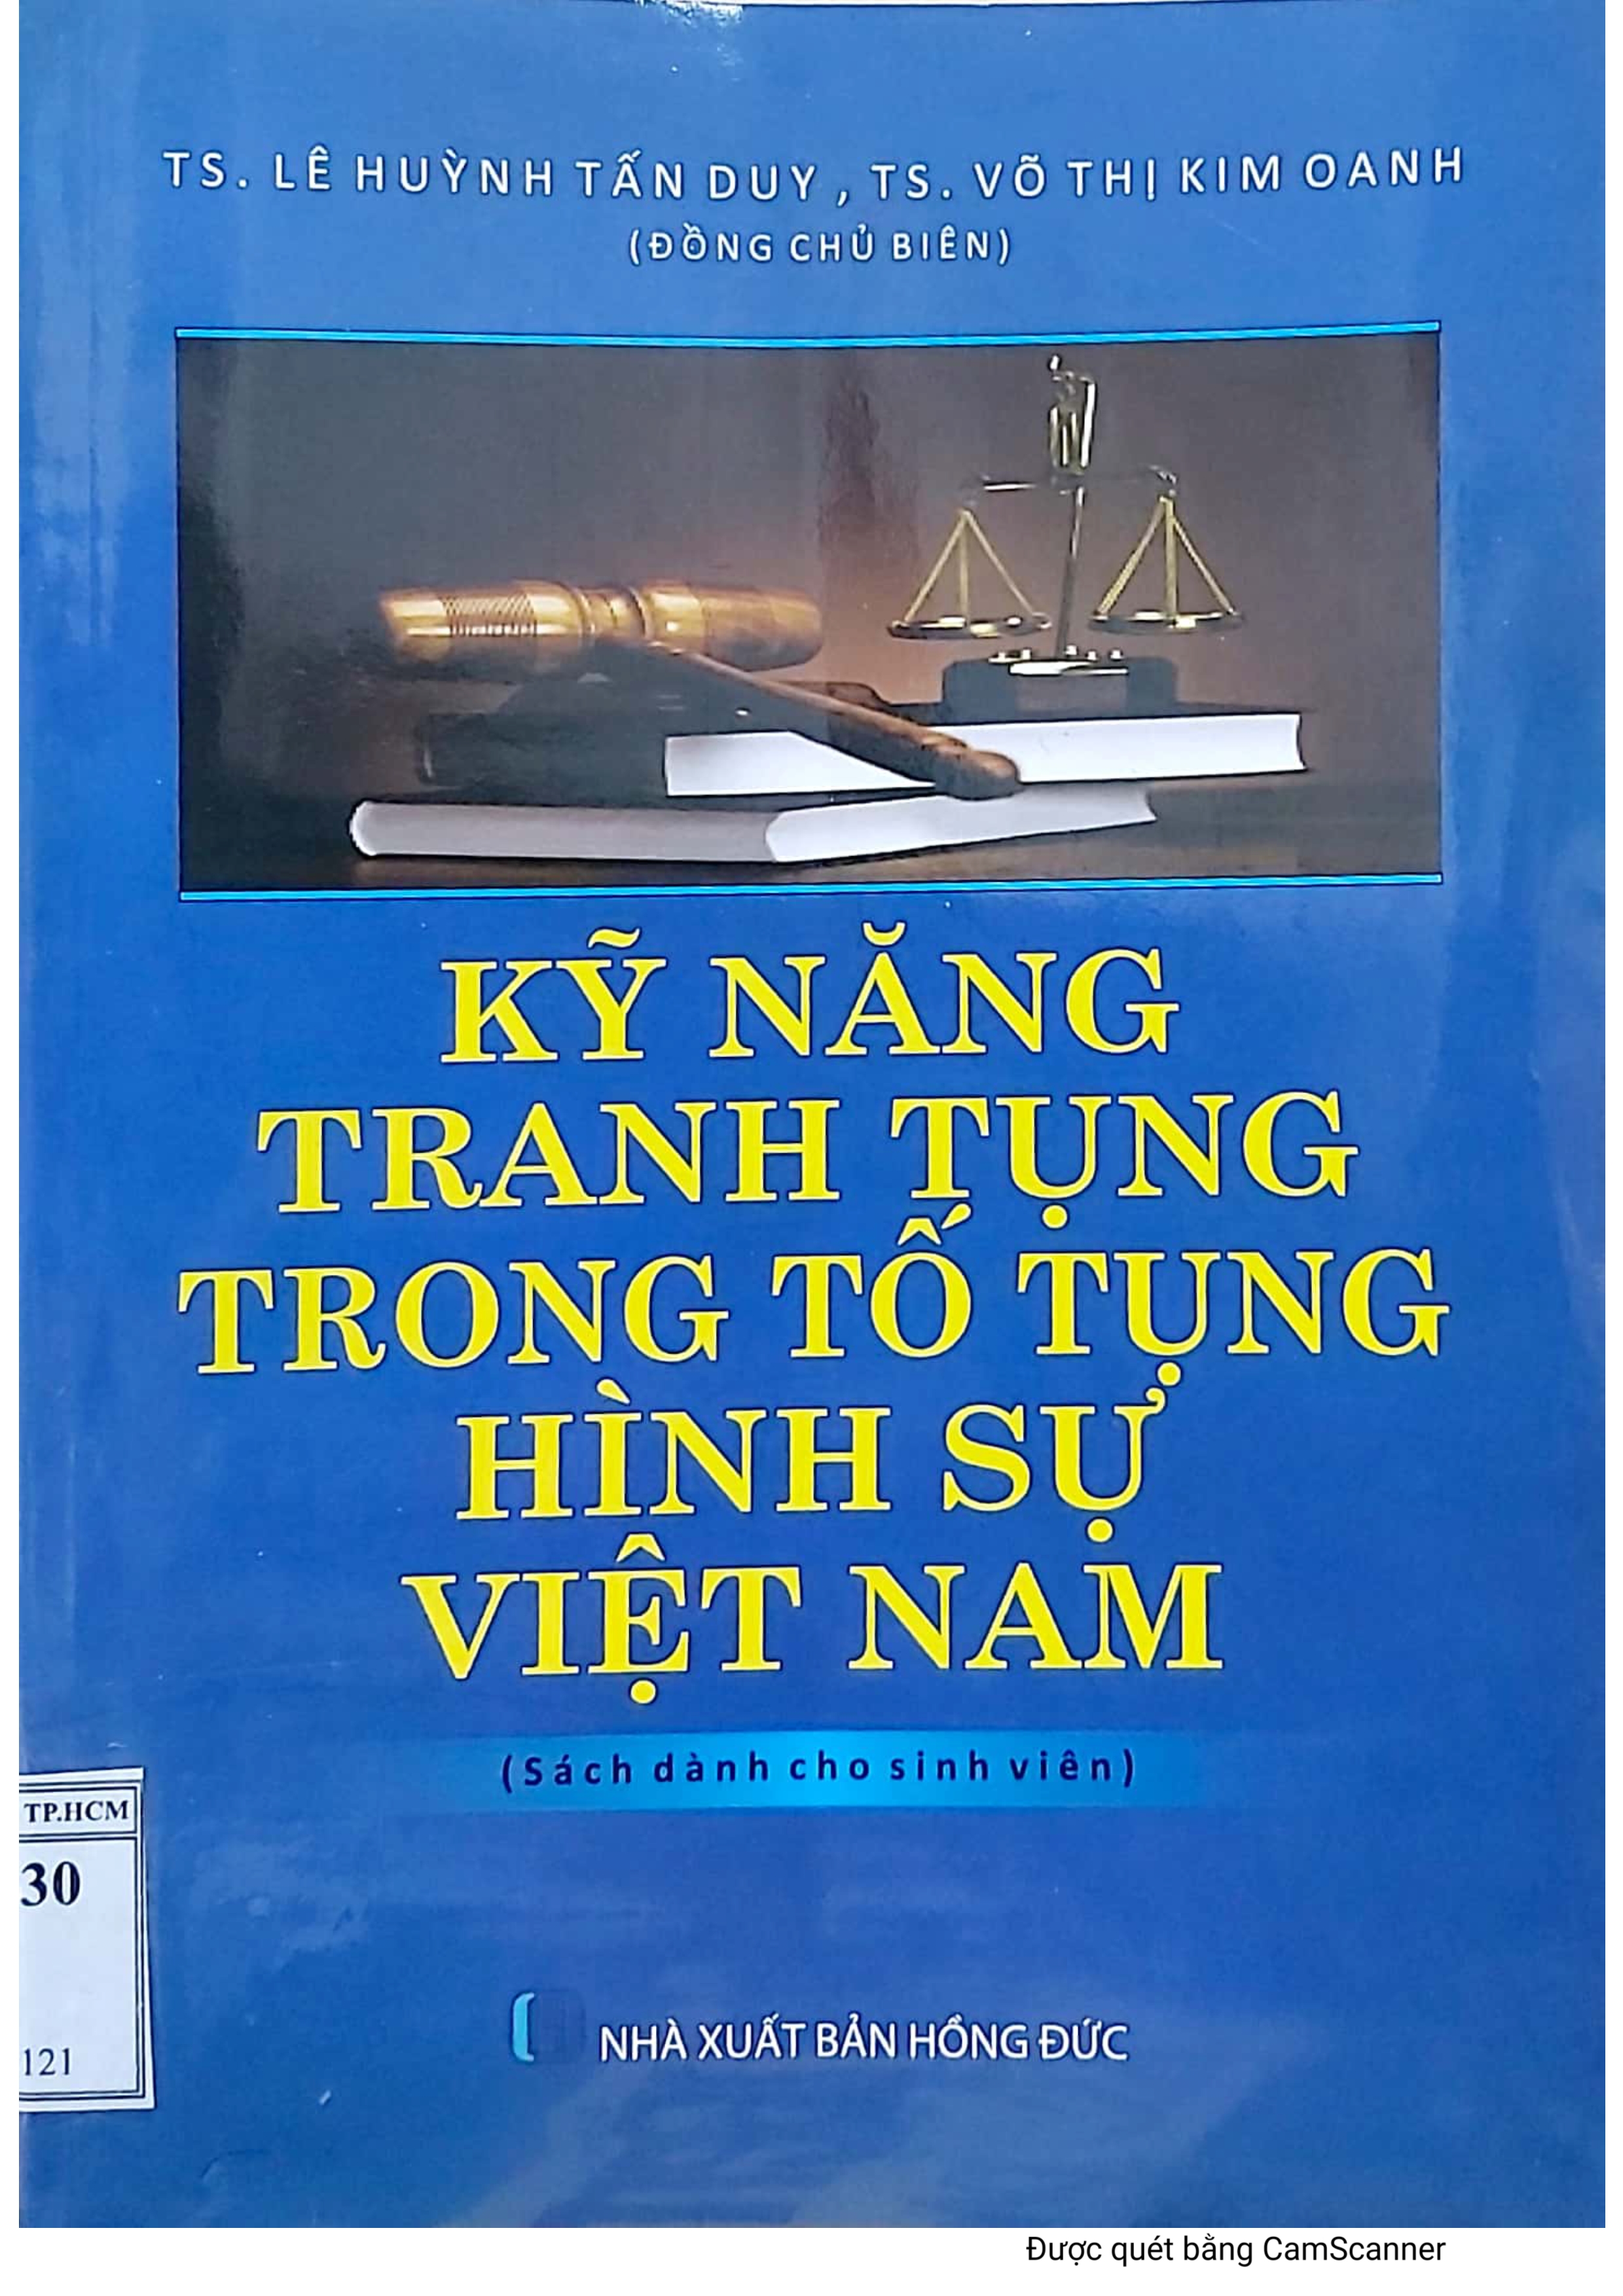 Kỹ năng tranh tụng trong tố tụng hình sự Việt Nam